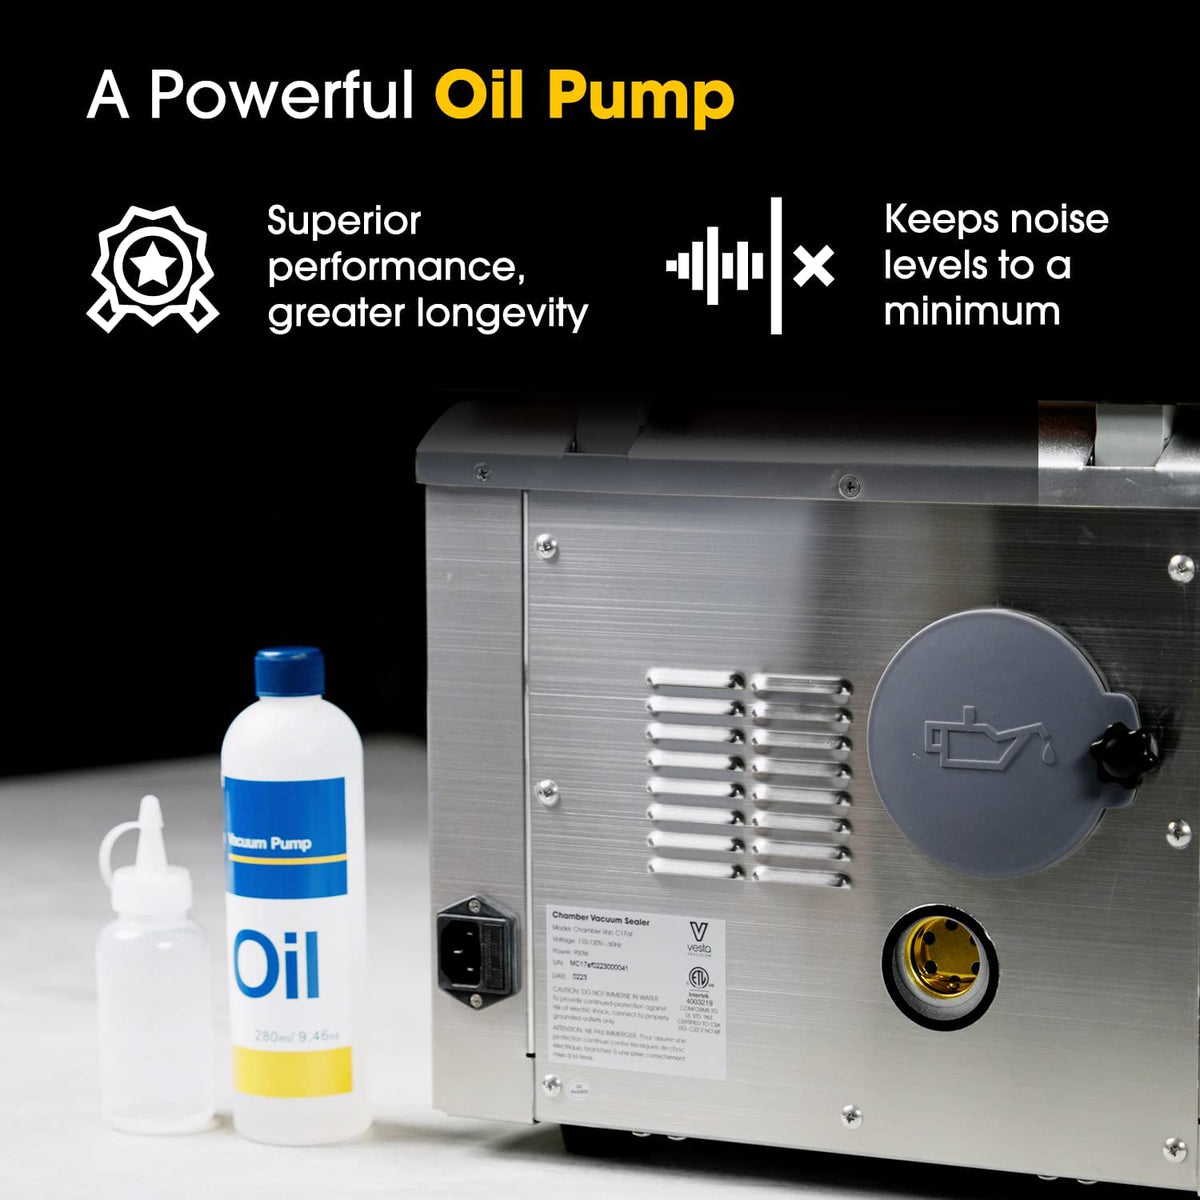 Vacuum Pump Oil for Chamber Vacuum Sealer Machines - 1 Quart